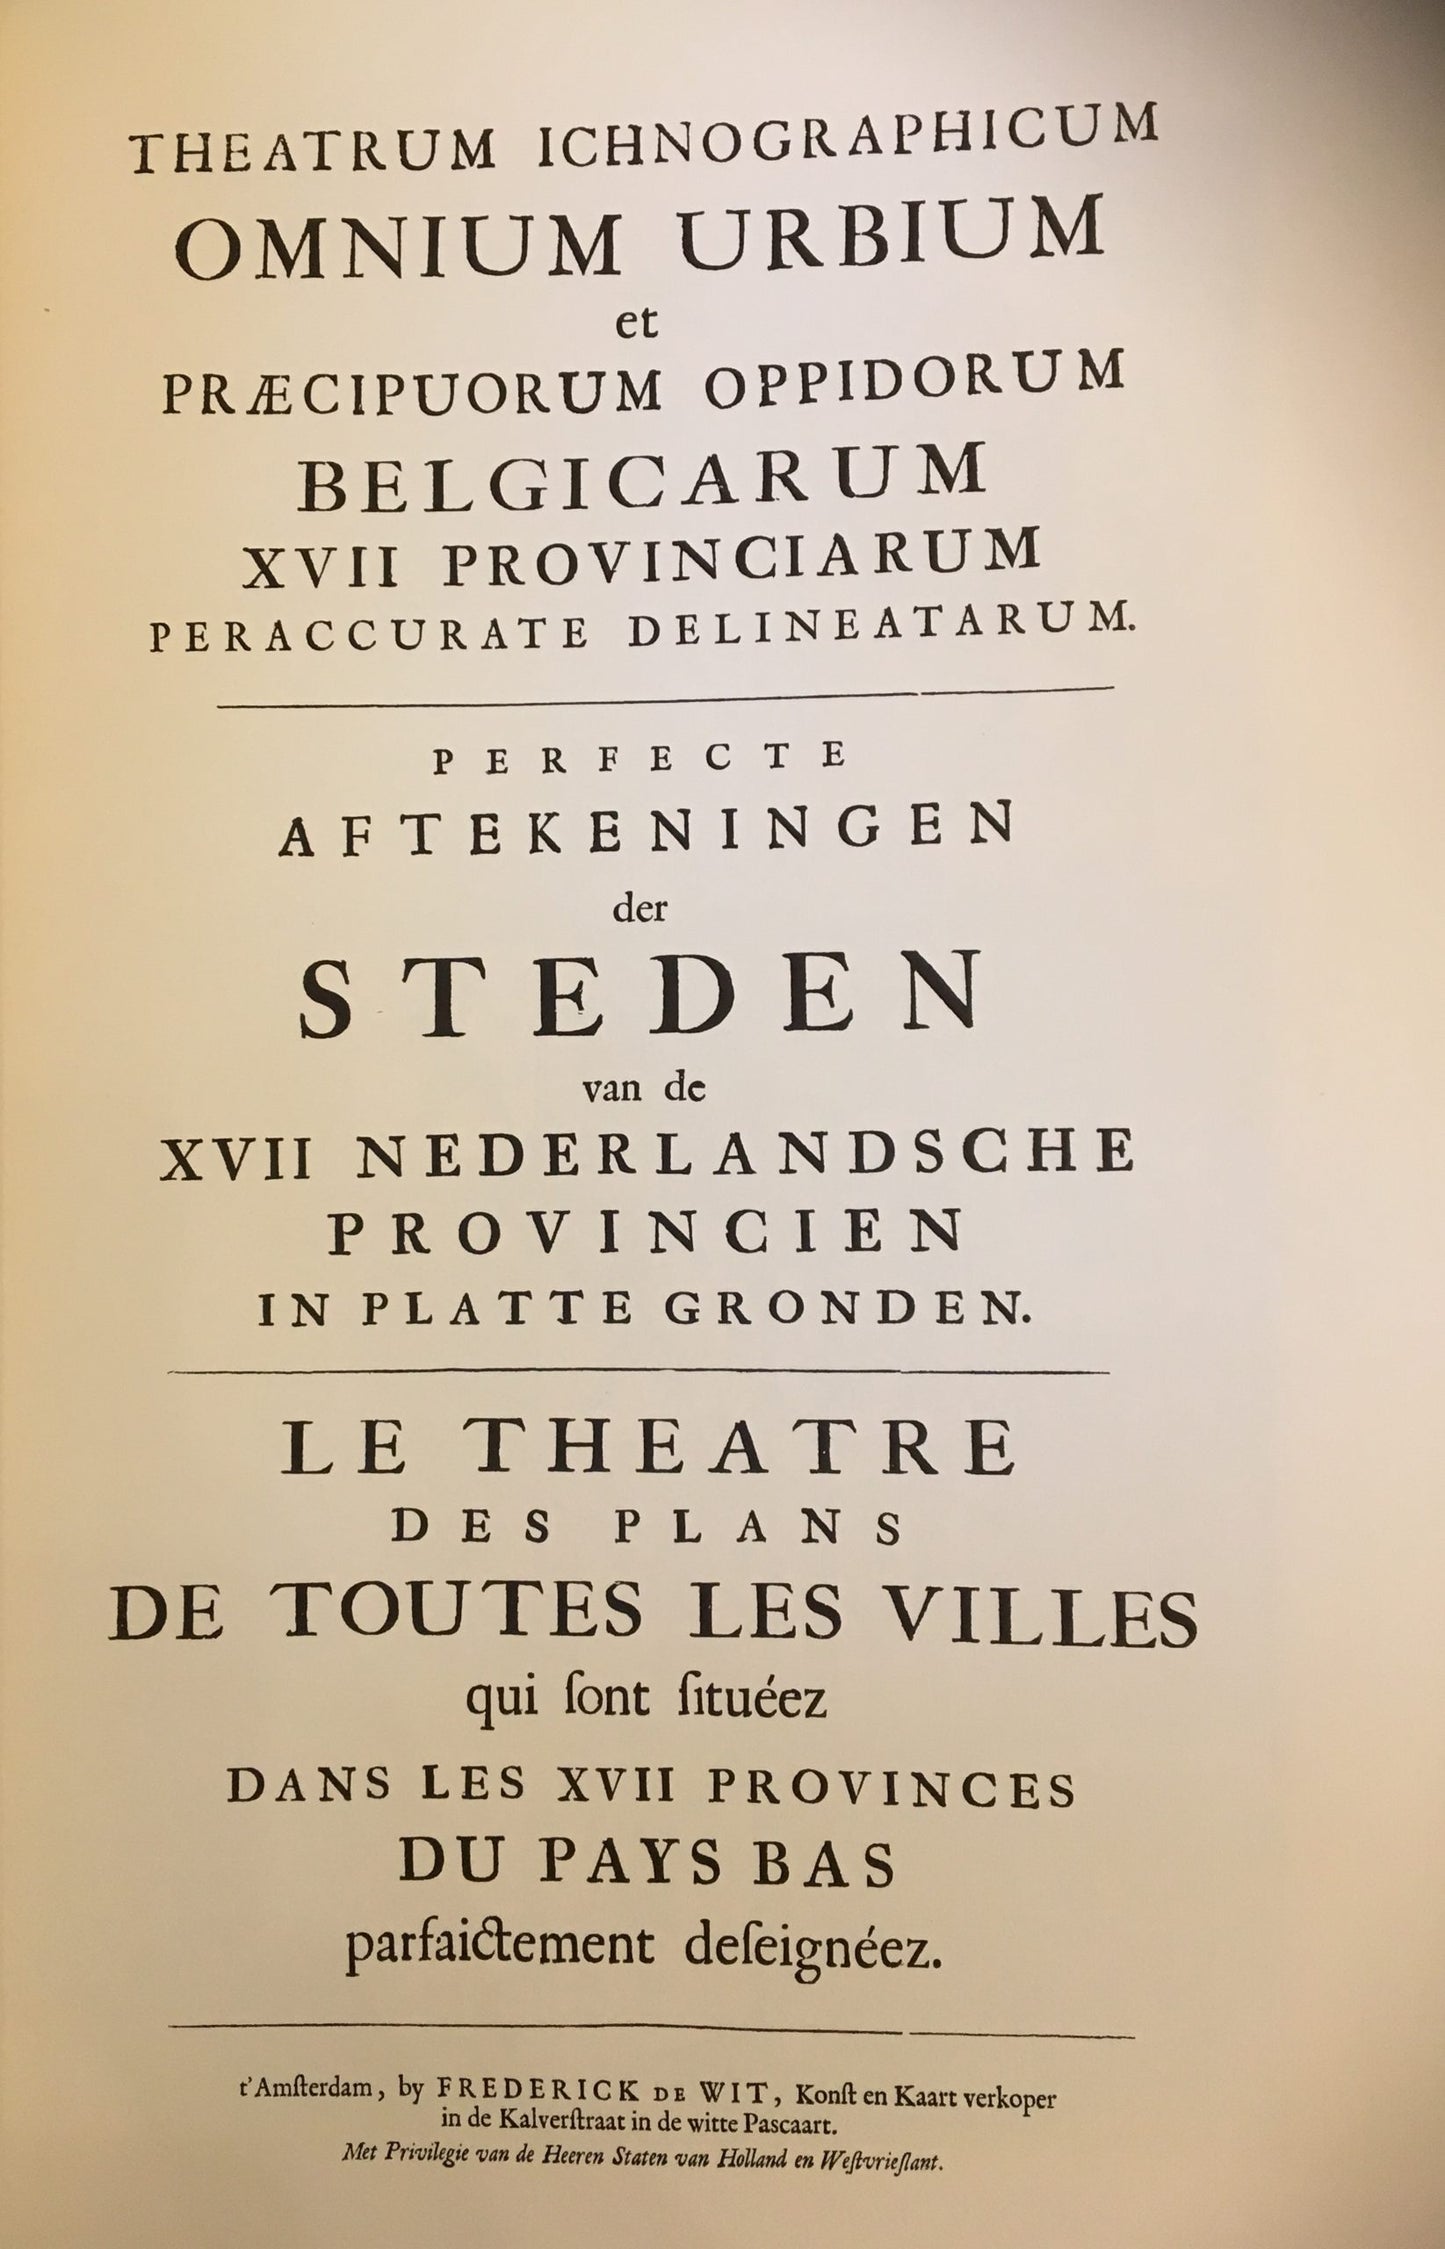 Stedenatlas, Book of towns, Livre des plans des villes